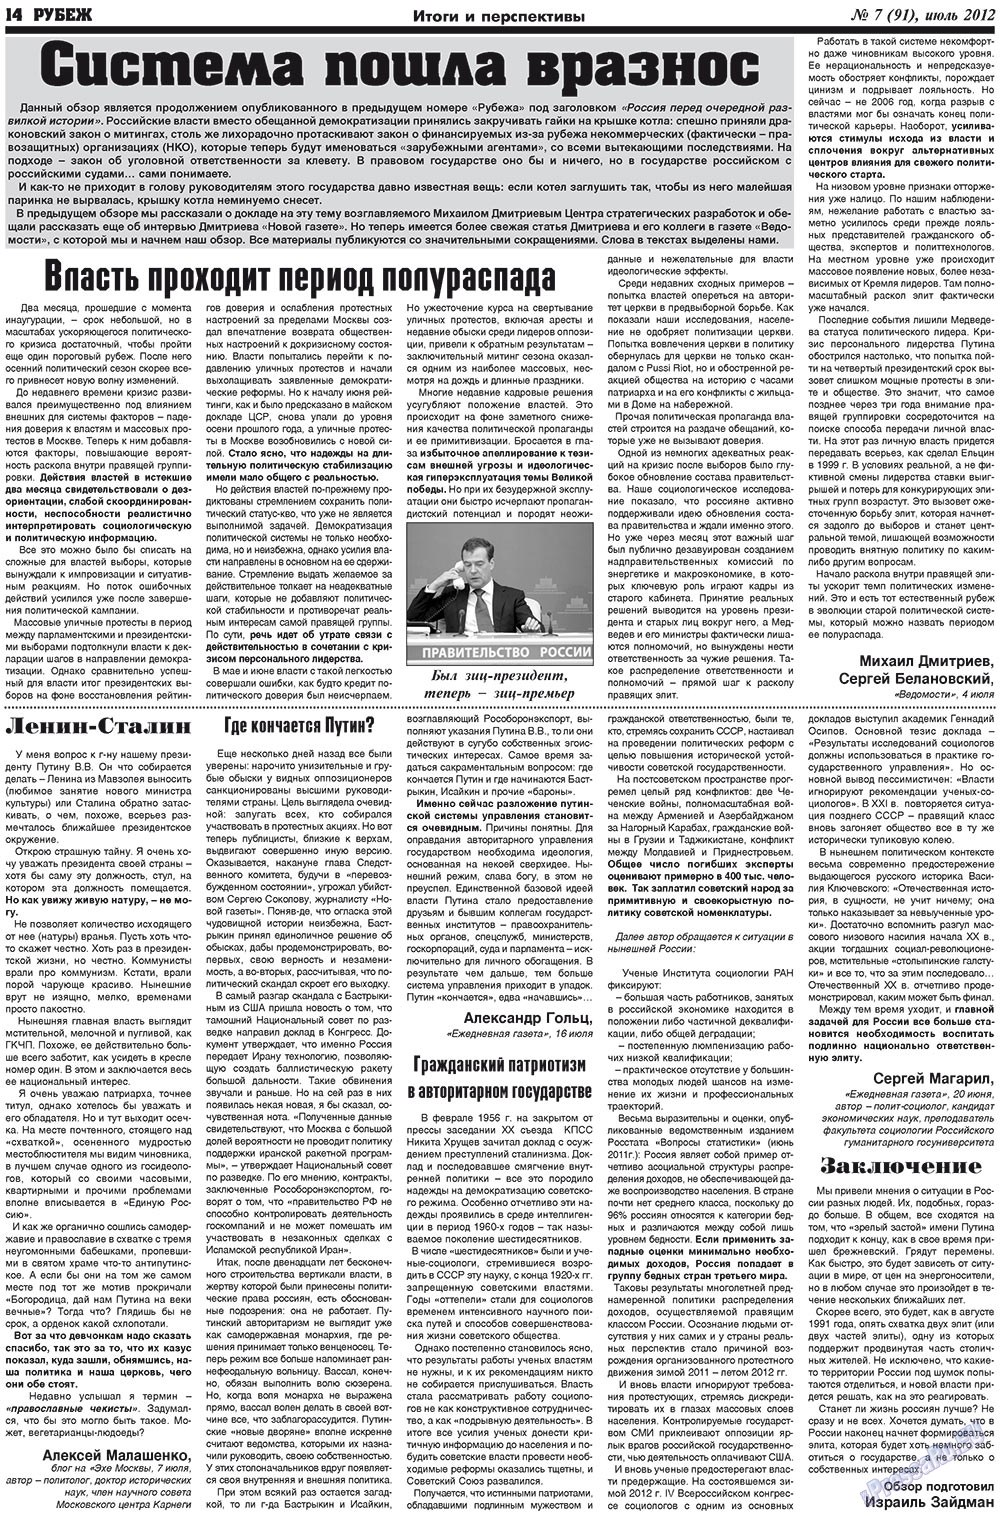 Рубеж (газета). 2012 год, номер 7, стр. 14